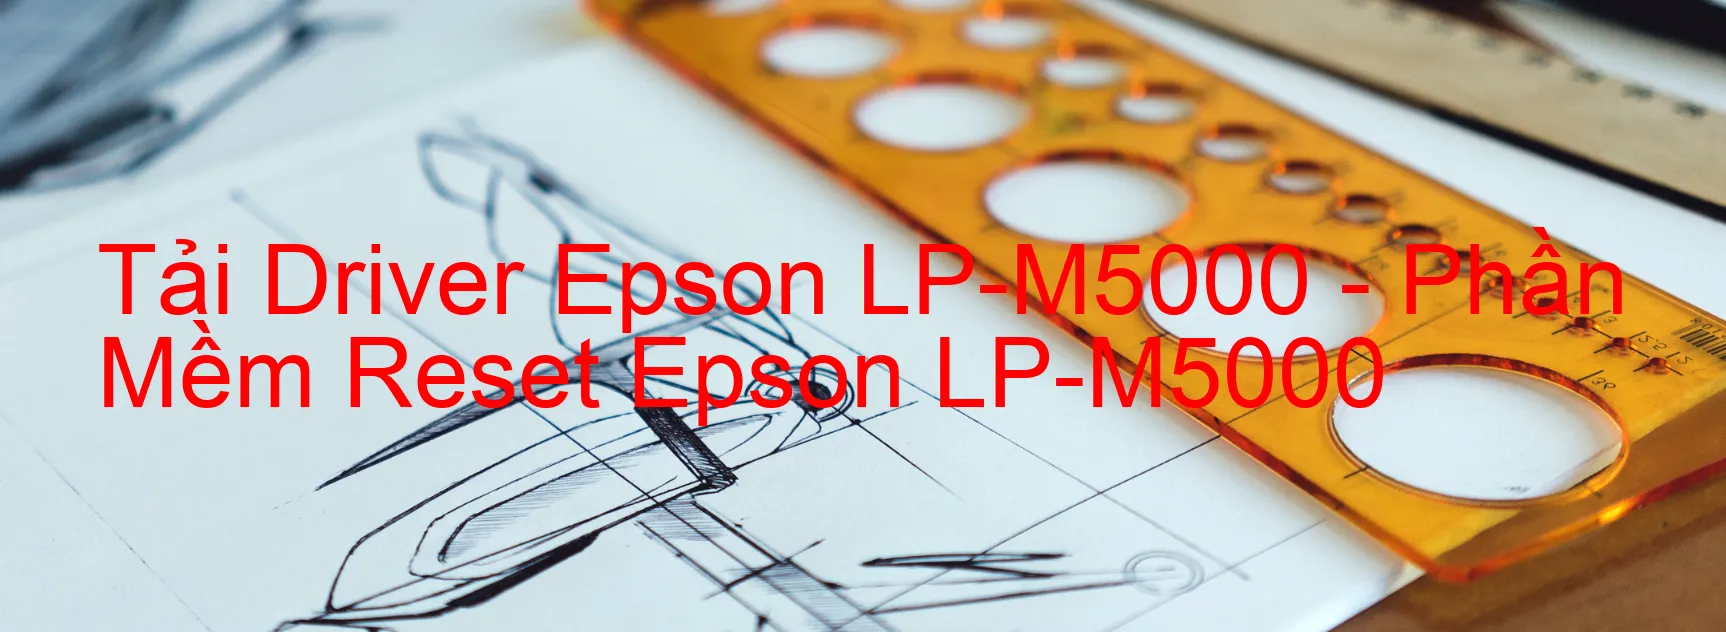 Driver Epson LP-M5000, Phần Mềm Reset Epson LP-M5000